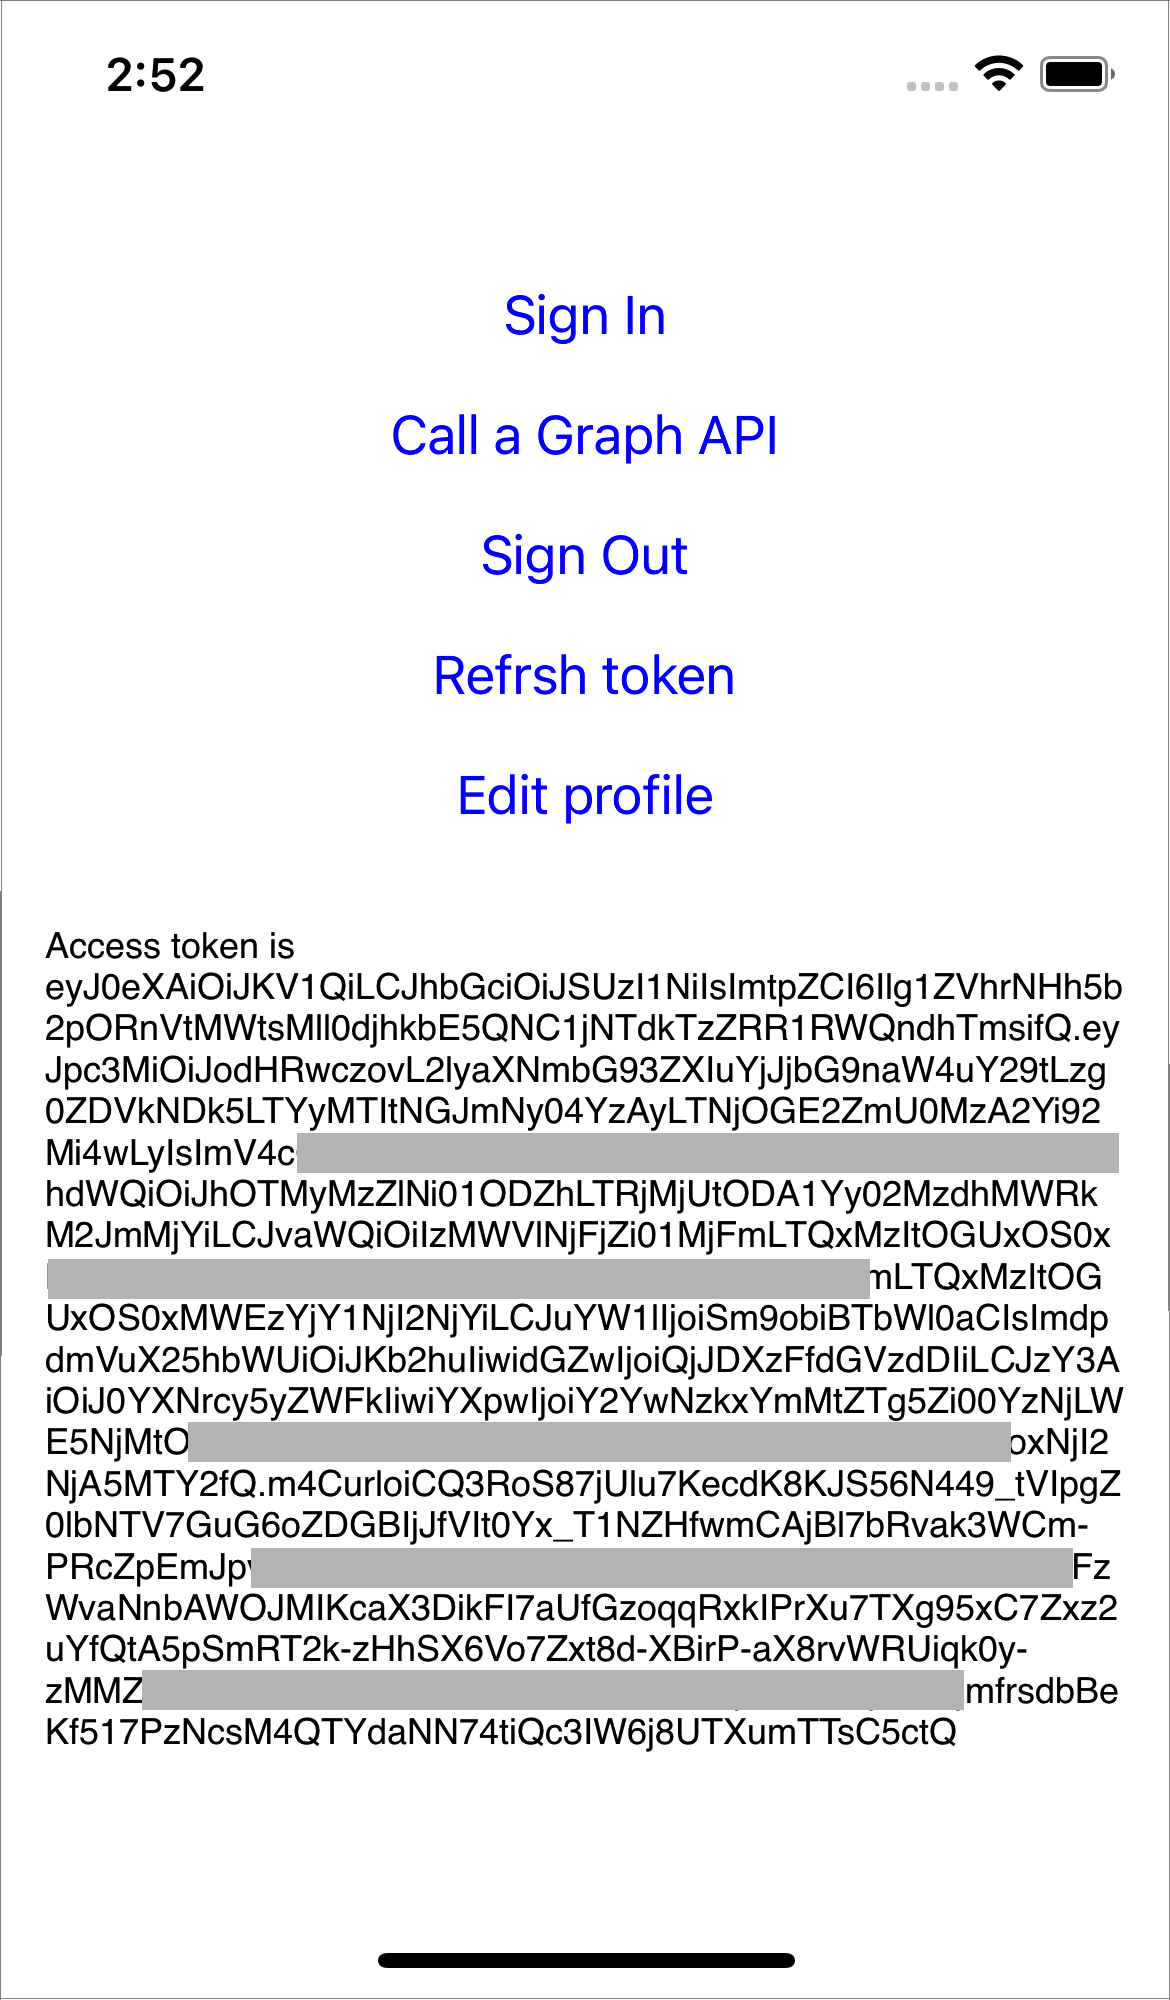 Captura de pantalla que muestra el token de acceso y el identificador de usuario de Azure AD B2C.